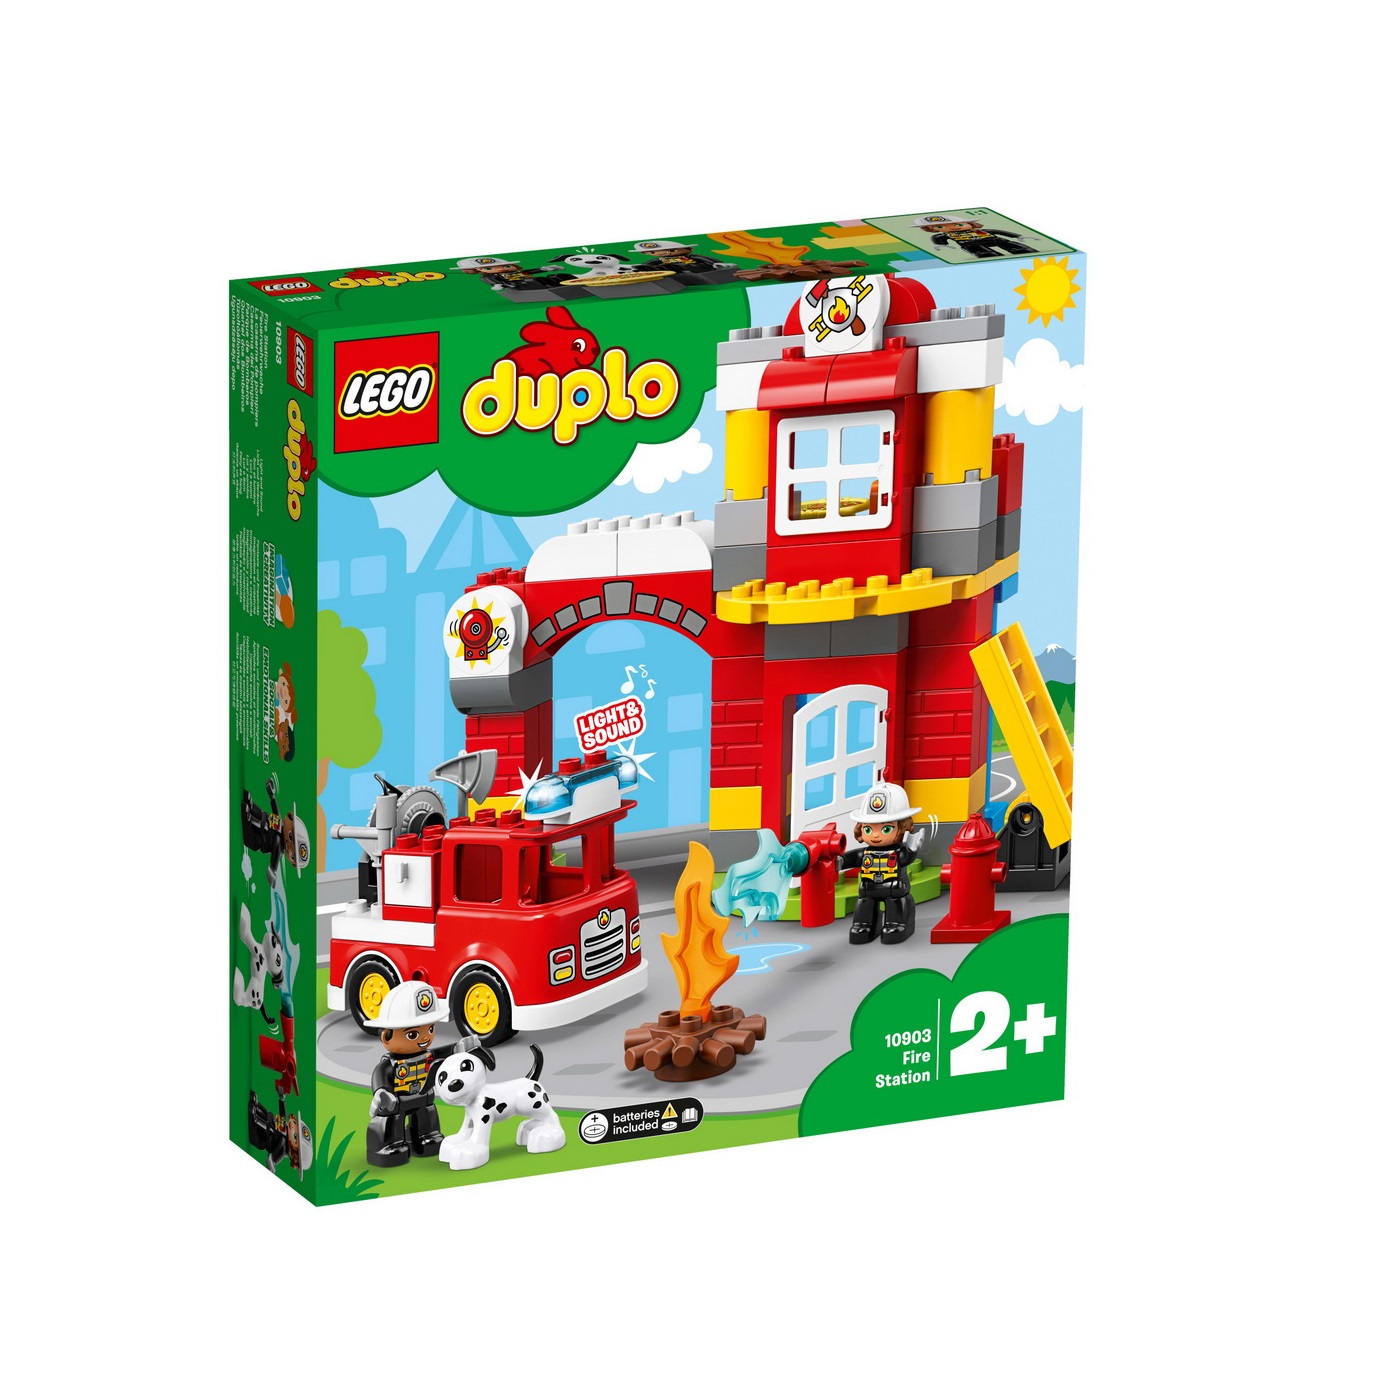 Statie de pompieri, L10903, Lego Duplo